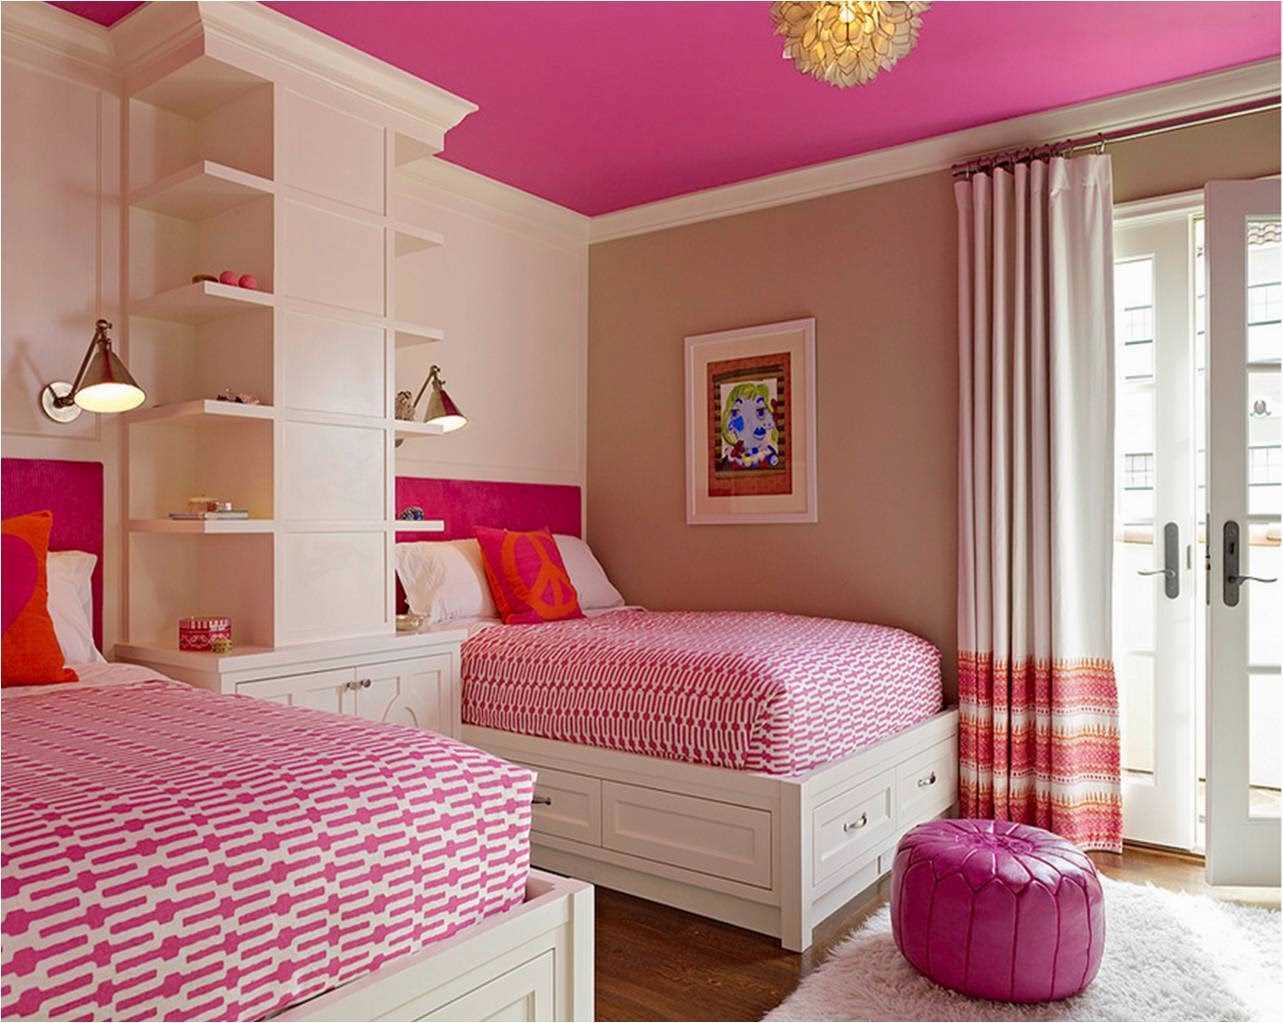 فكرة استخدام اللون الوردي في ديكور غرفة مشرقة